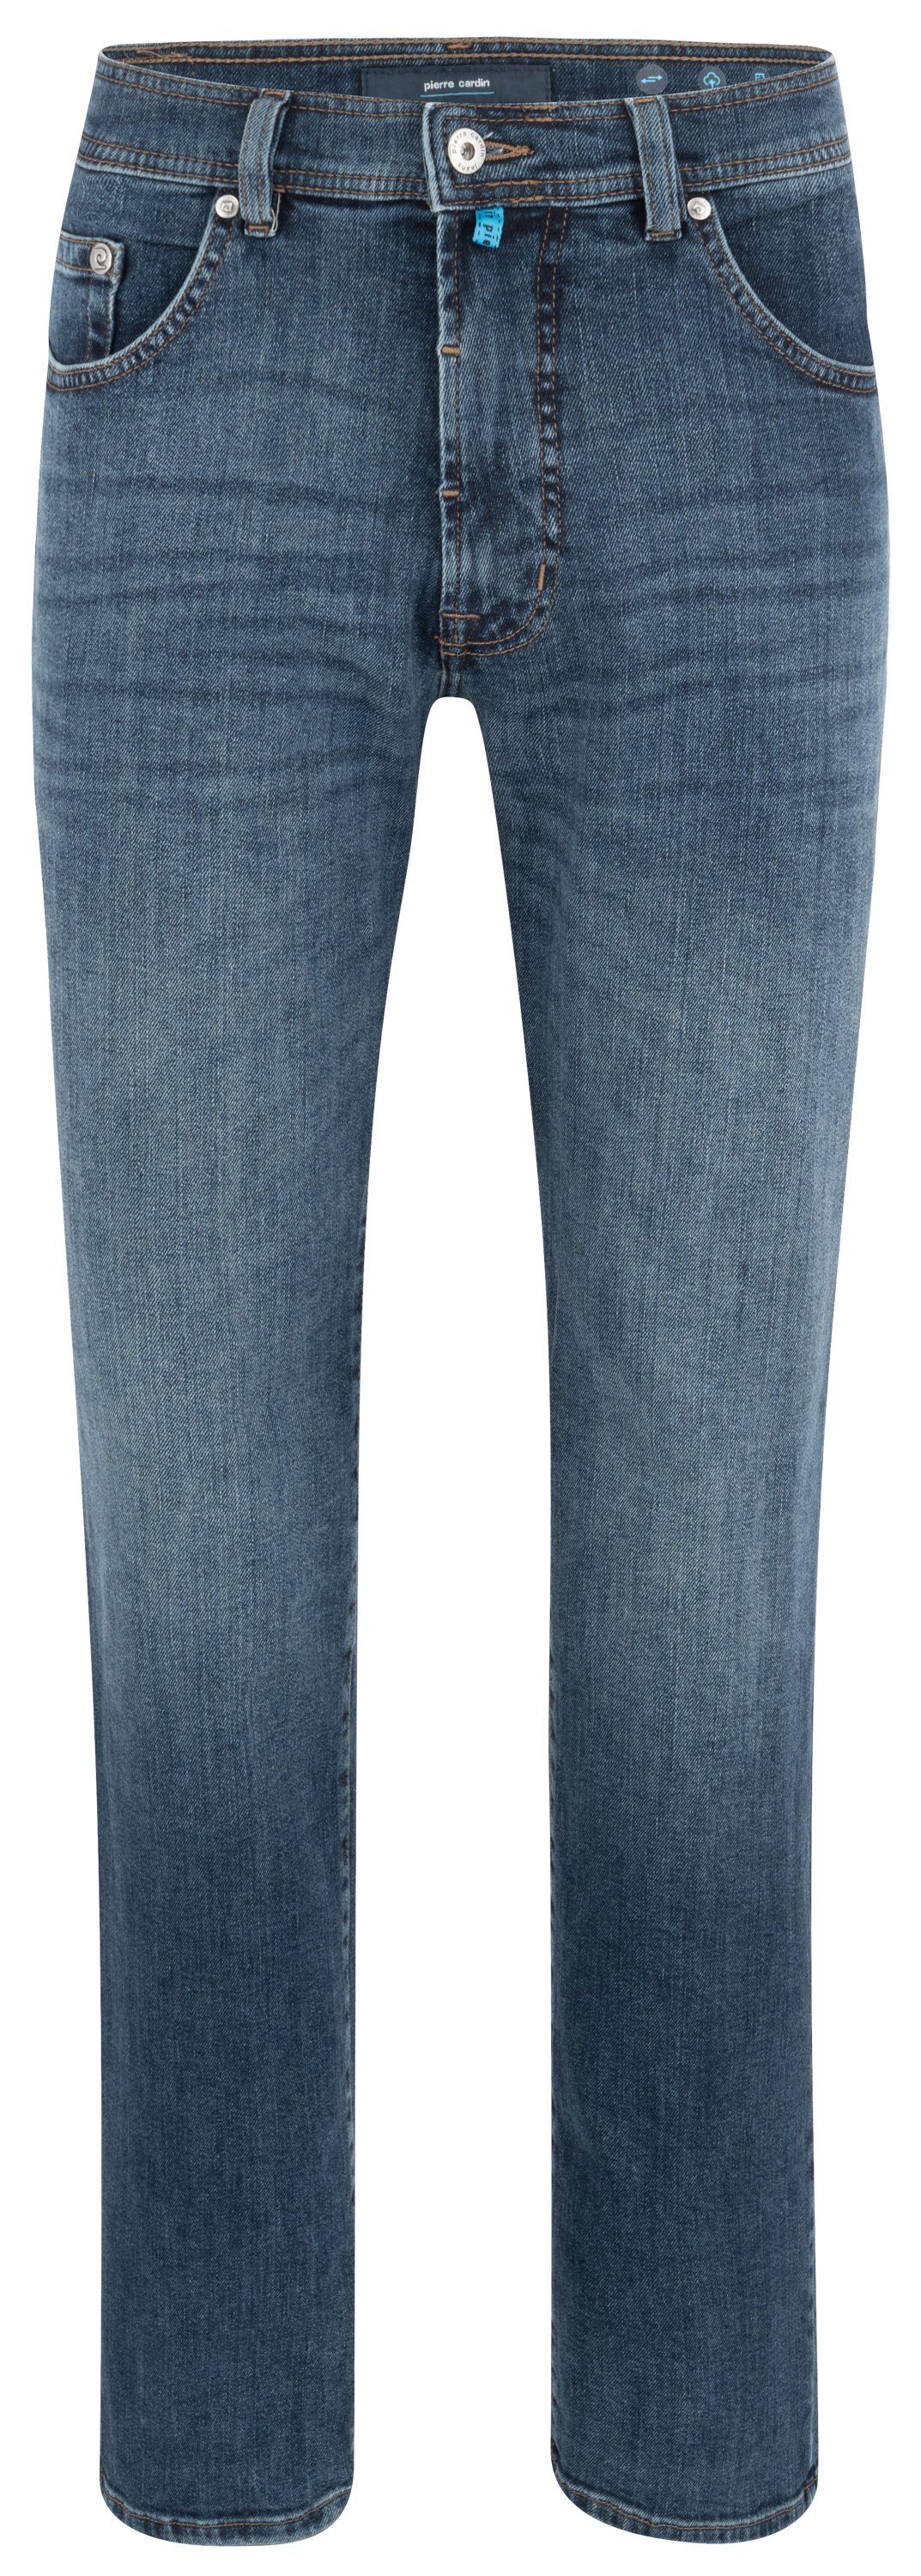 Pierre Cardin 5-Pocket-Jeans PIERRE CARDIN DIJON ocean blue used buffies 32310 7724.6834